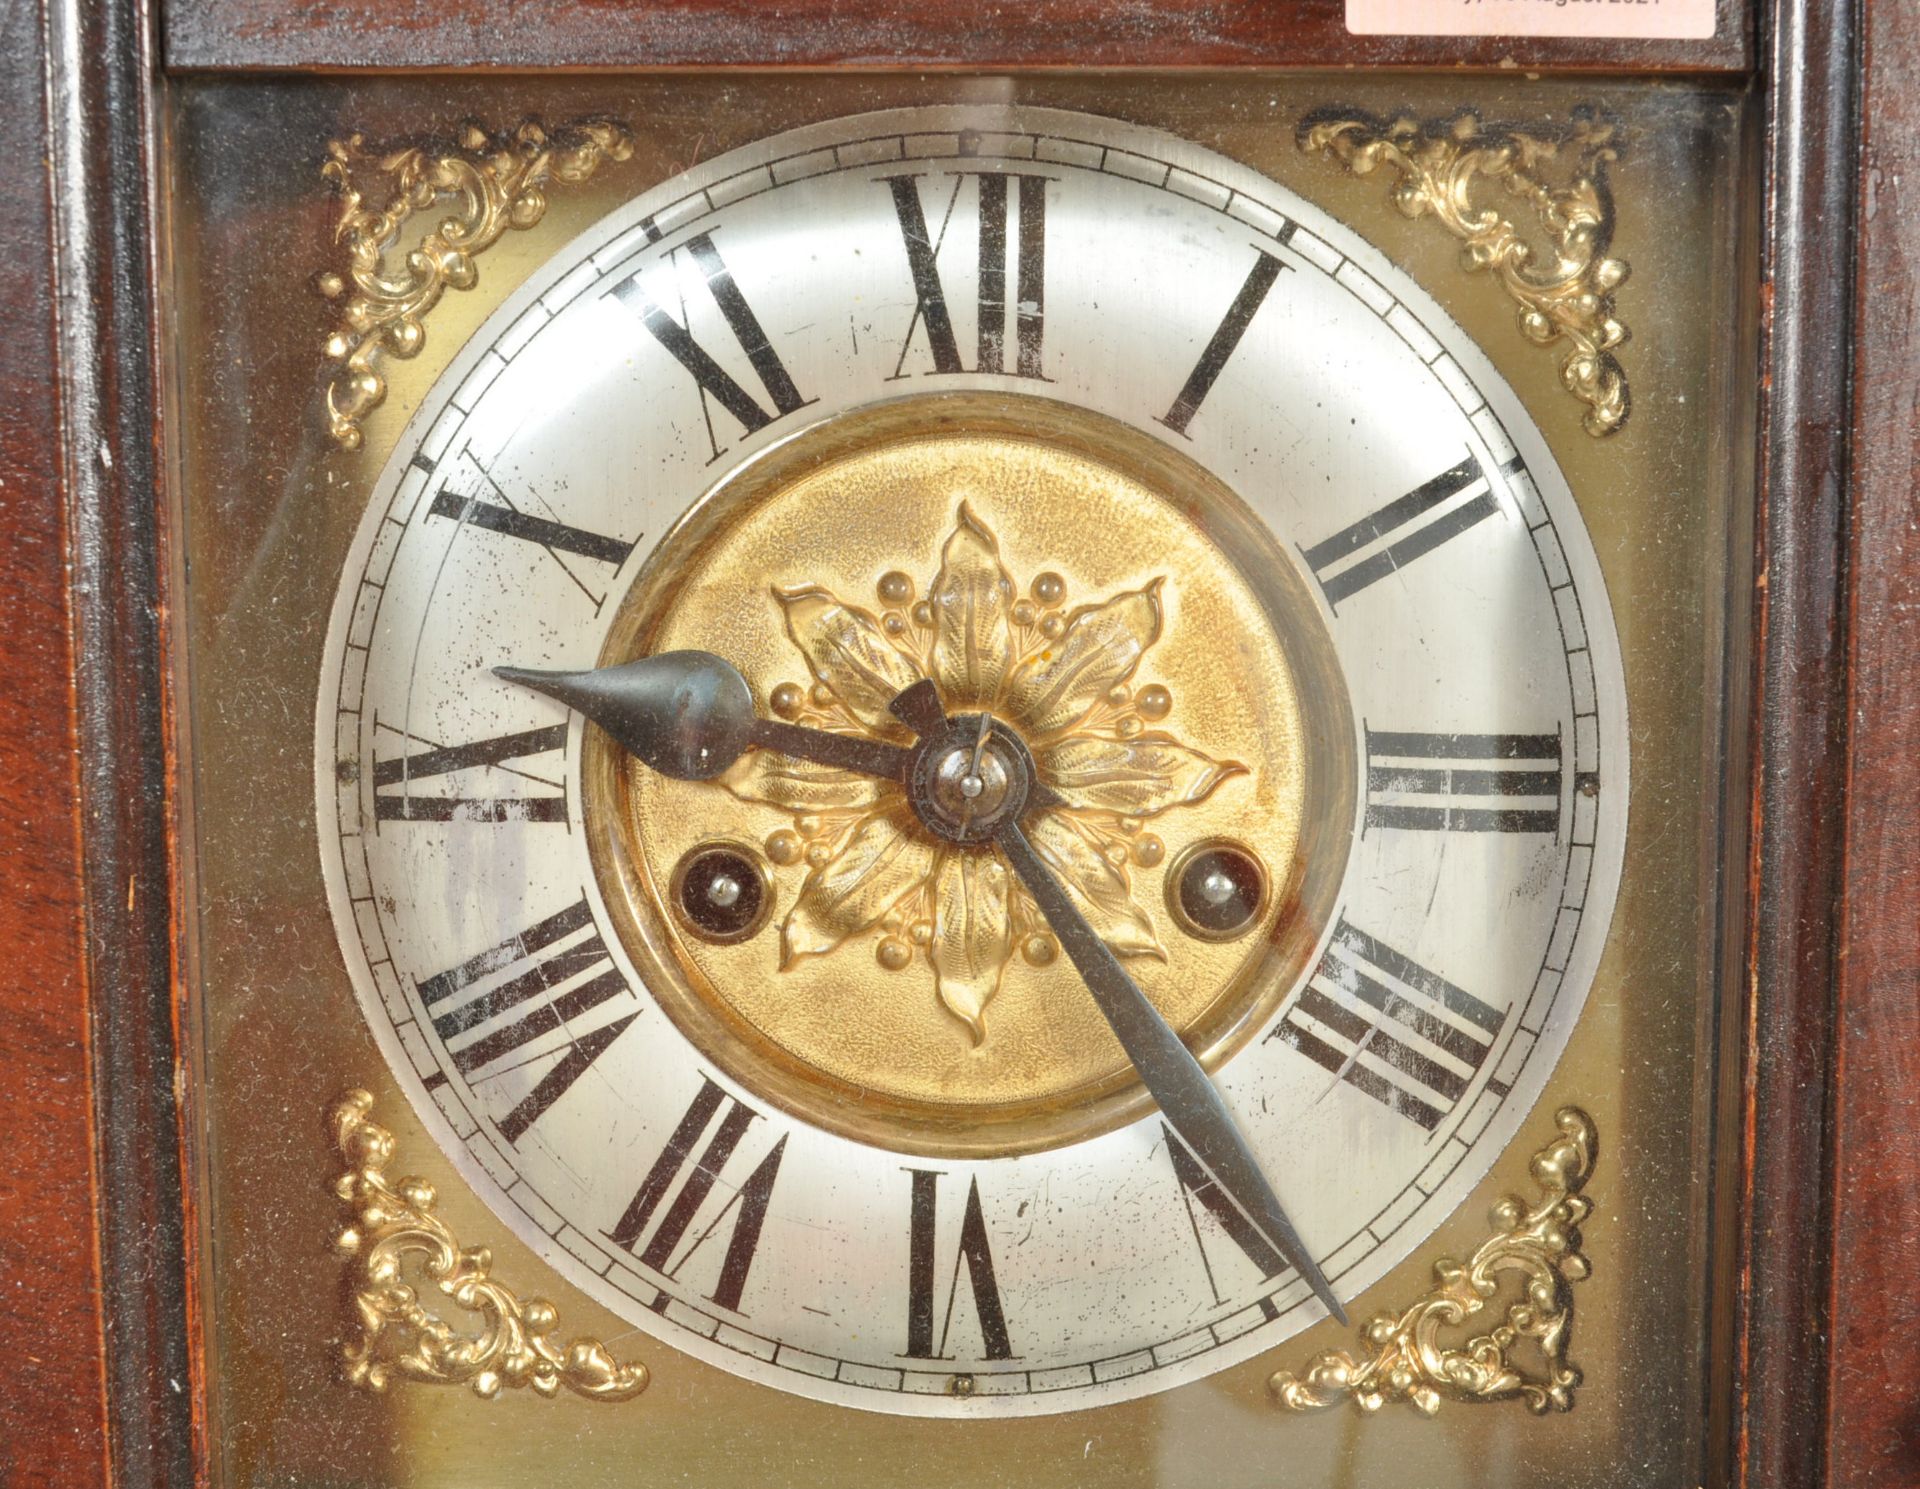 20TH CENTURY MAHOGANY VIENNA CLOCK - Image 2 of 7